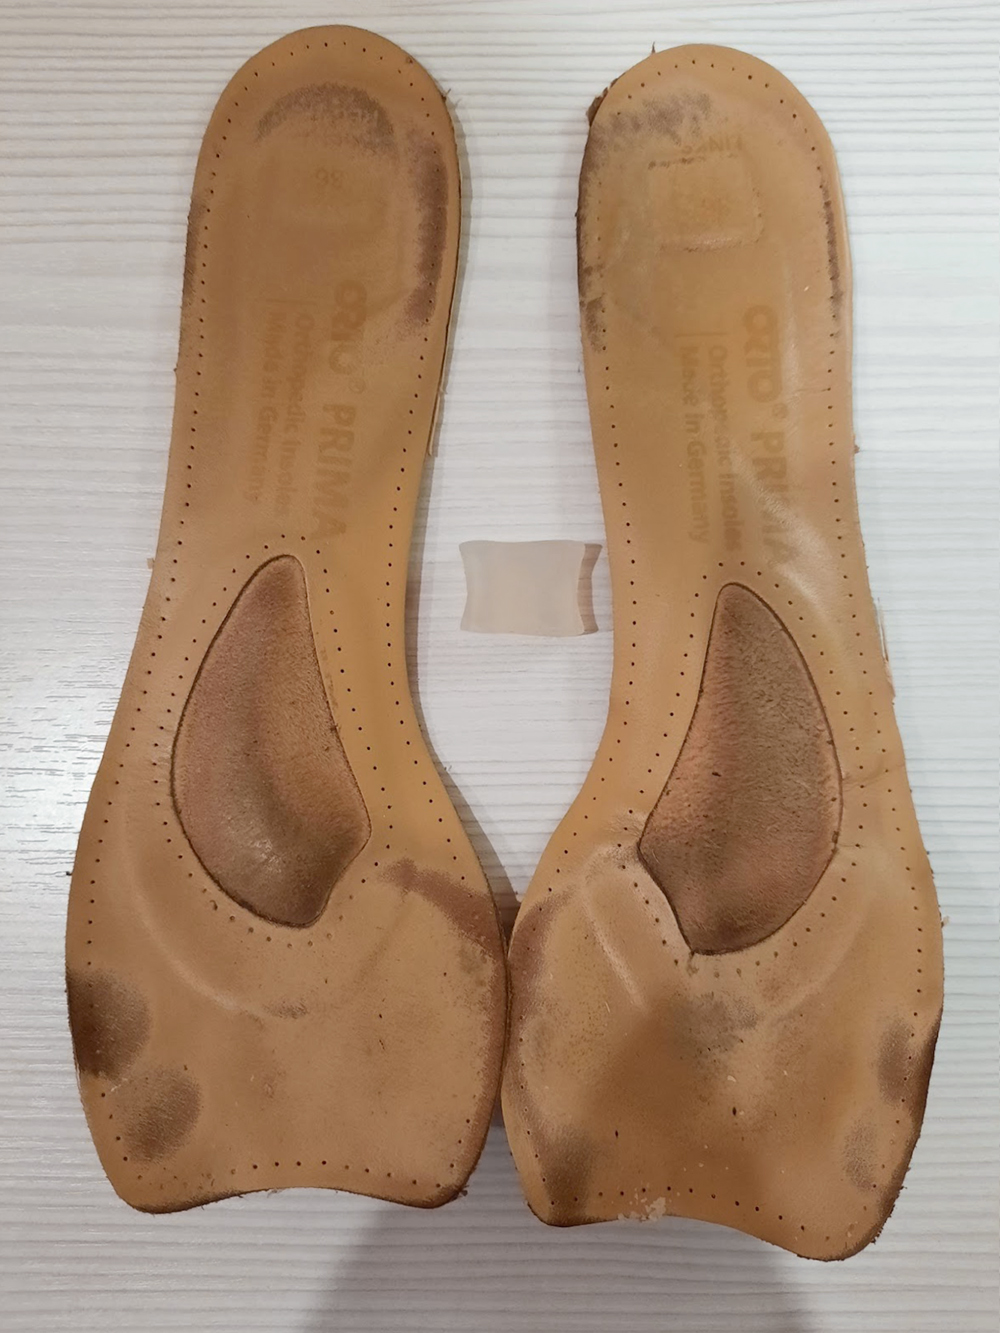 Стельки Orto Prima для обуви с каблуком — тоже из натуральной кожи. Стоят 1500 ₽